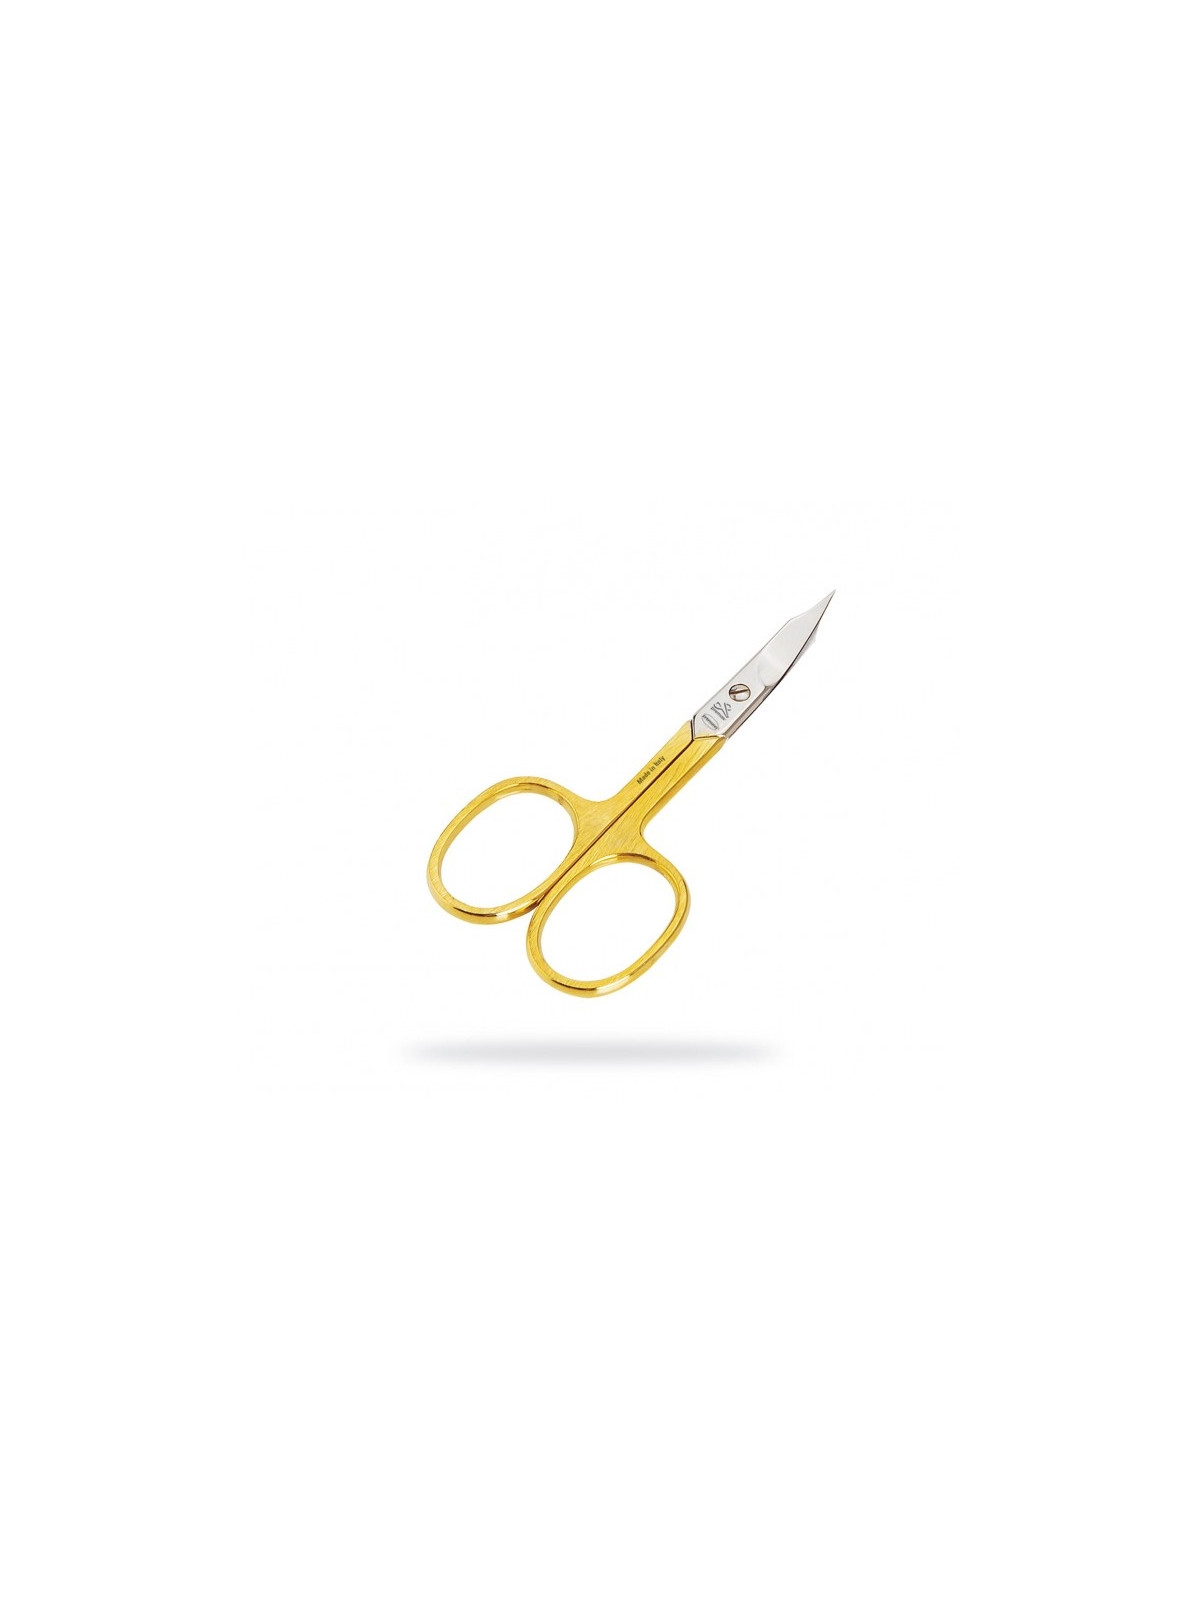 Premax Optima Gold Manicure Scissors